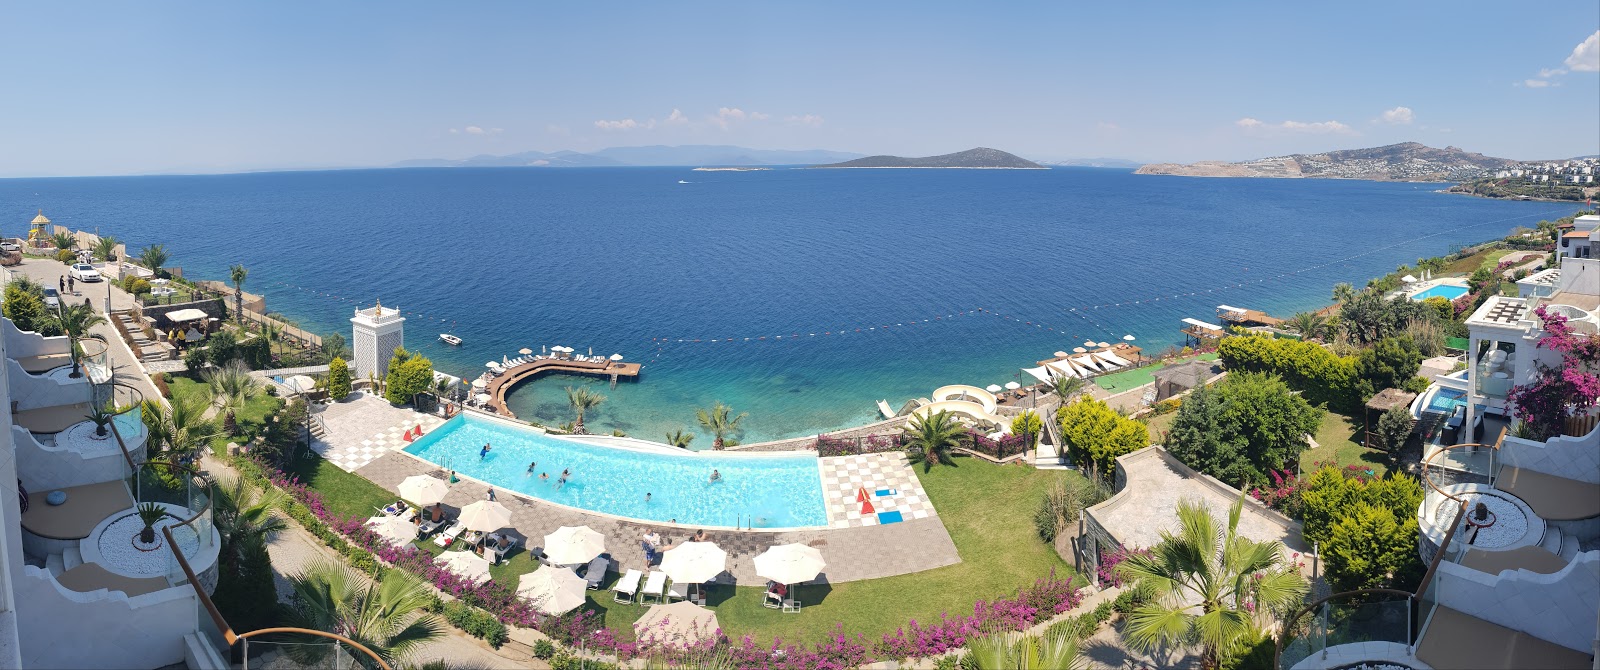 Foto af Bvs Bosphorus Resort med turkis rent vand overflade